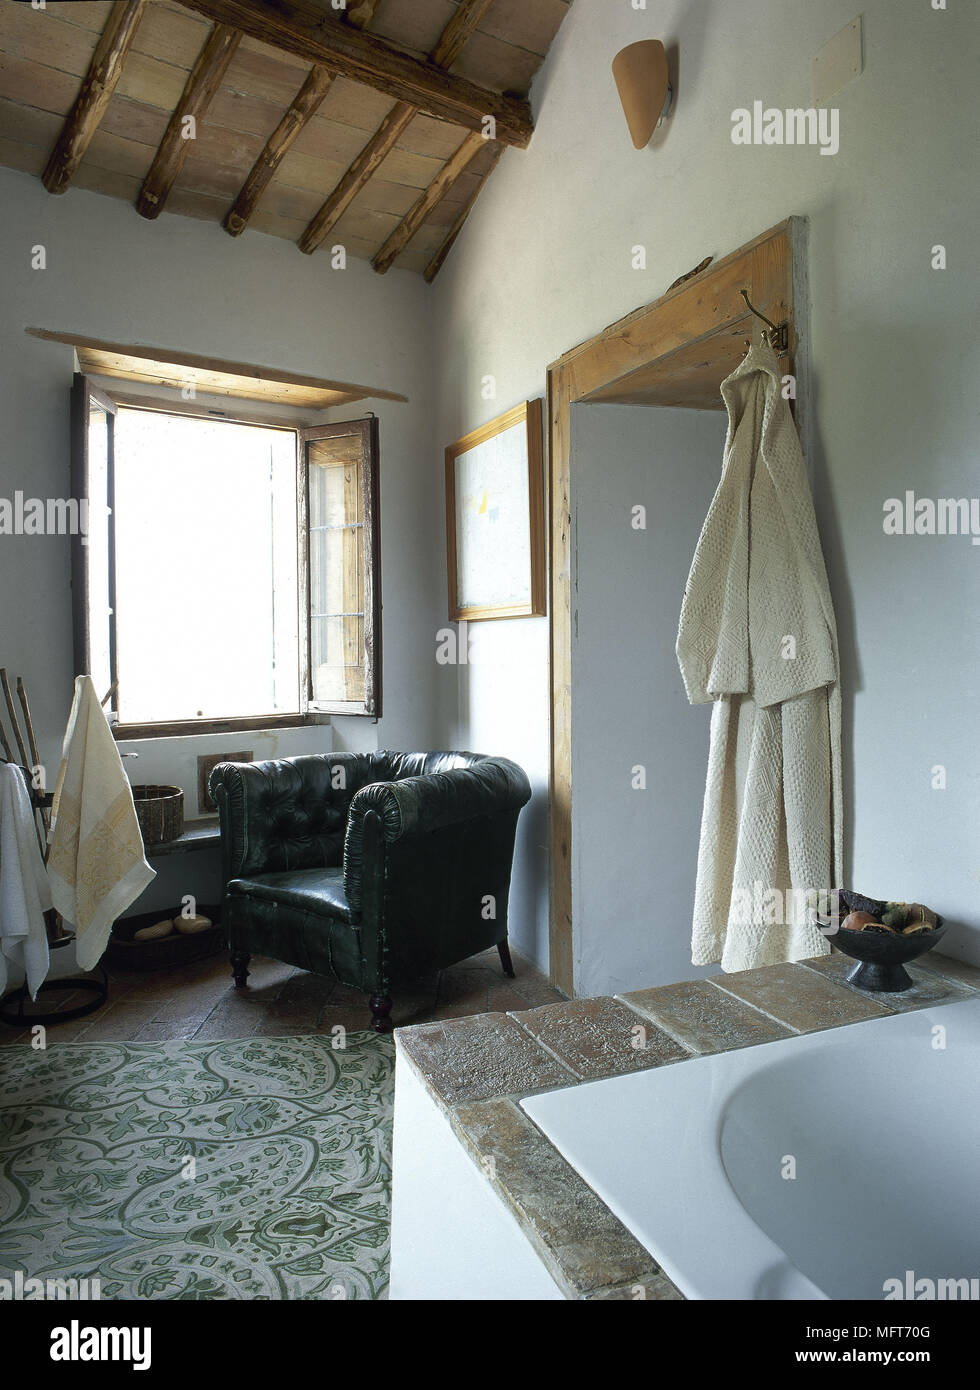 Paese rustico bagno travi a soffitto lavabo in ceramica circondano interni bagni Foto Stock